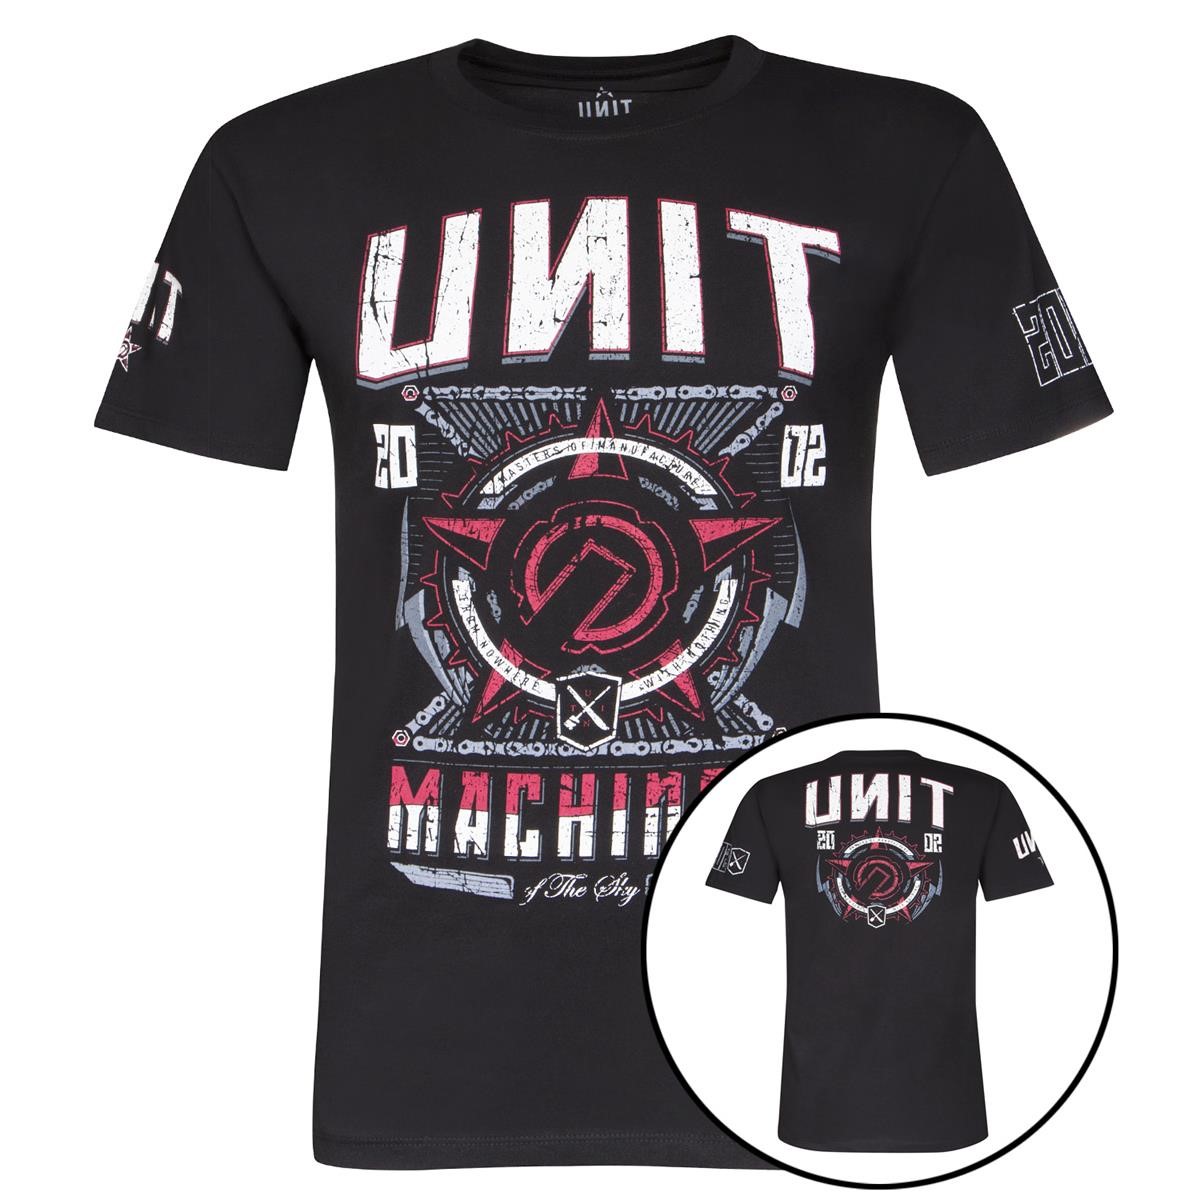 Unit T-Shirt Tactical Black